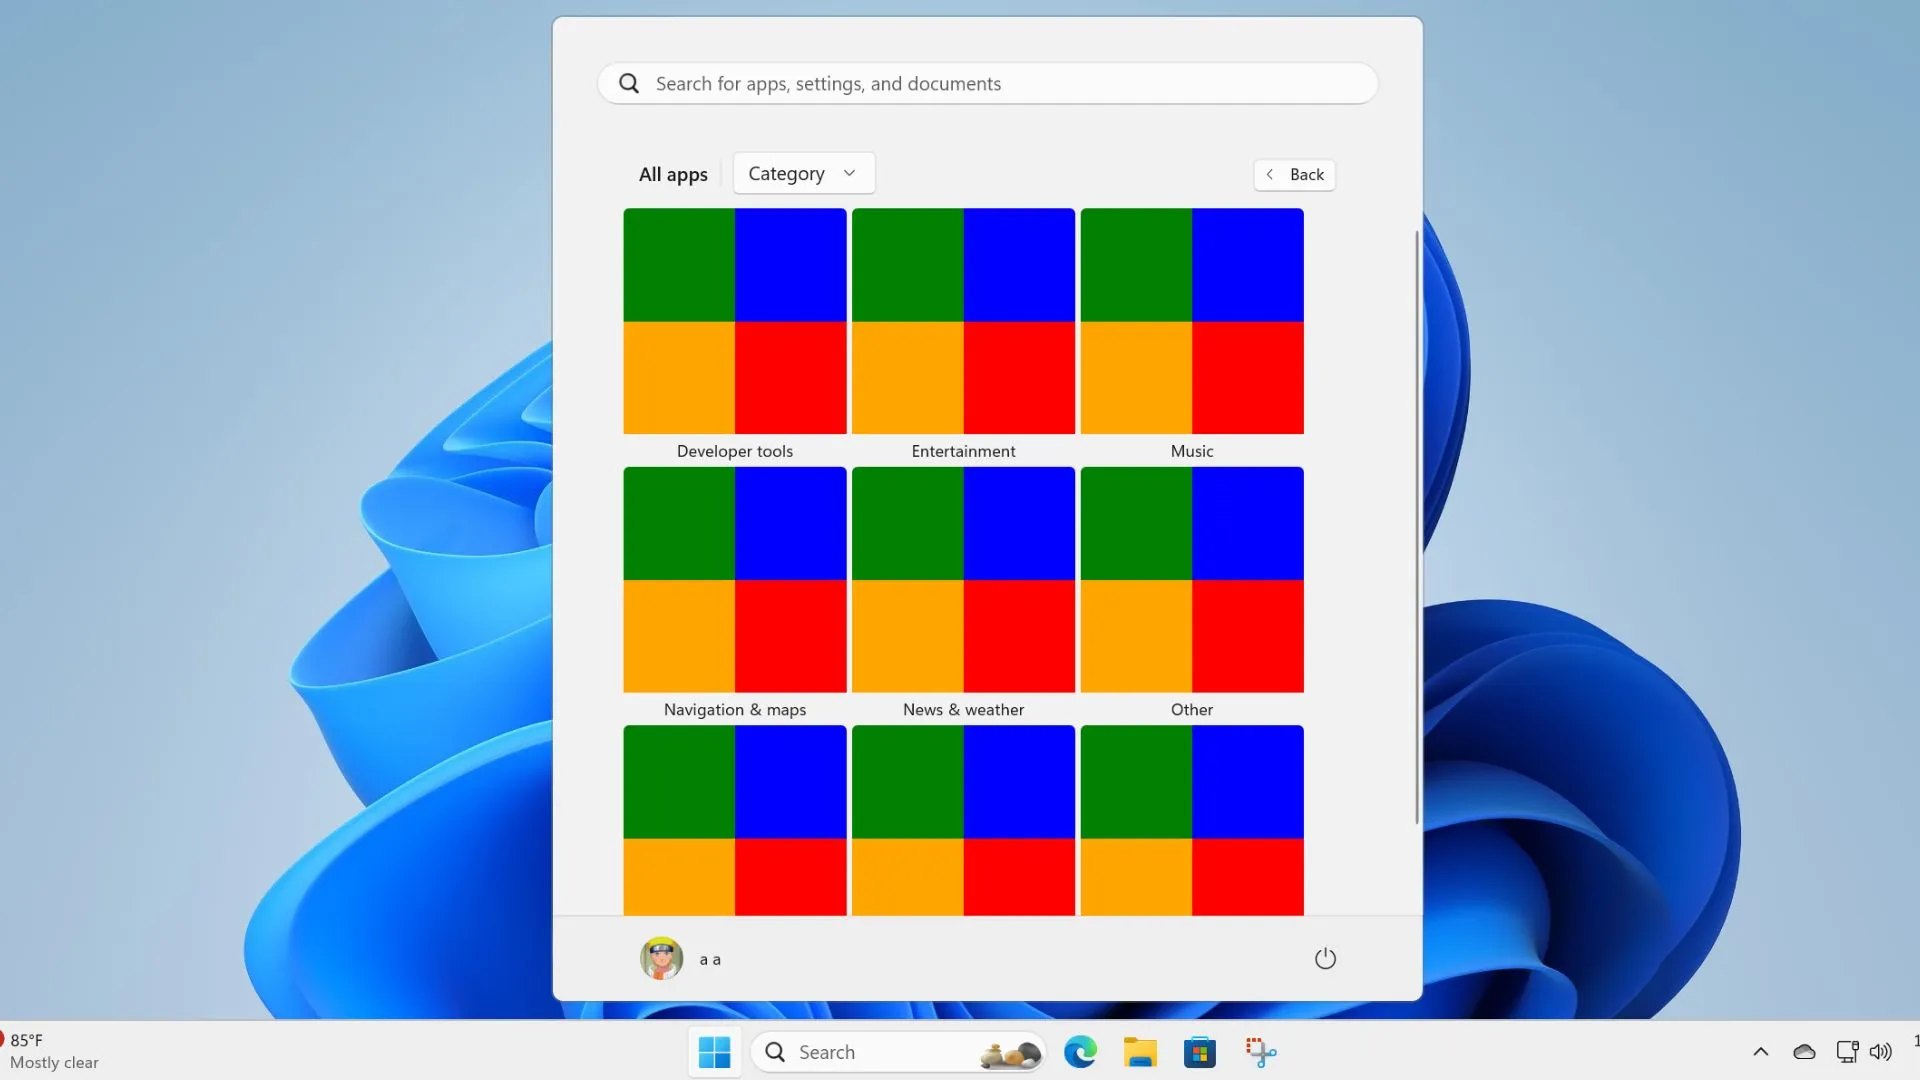 Windows 11 Startmenu opnieuw ontworpen met nieuwe categorie, rasterindeling